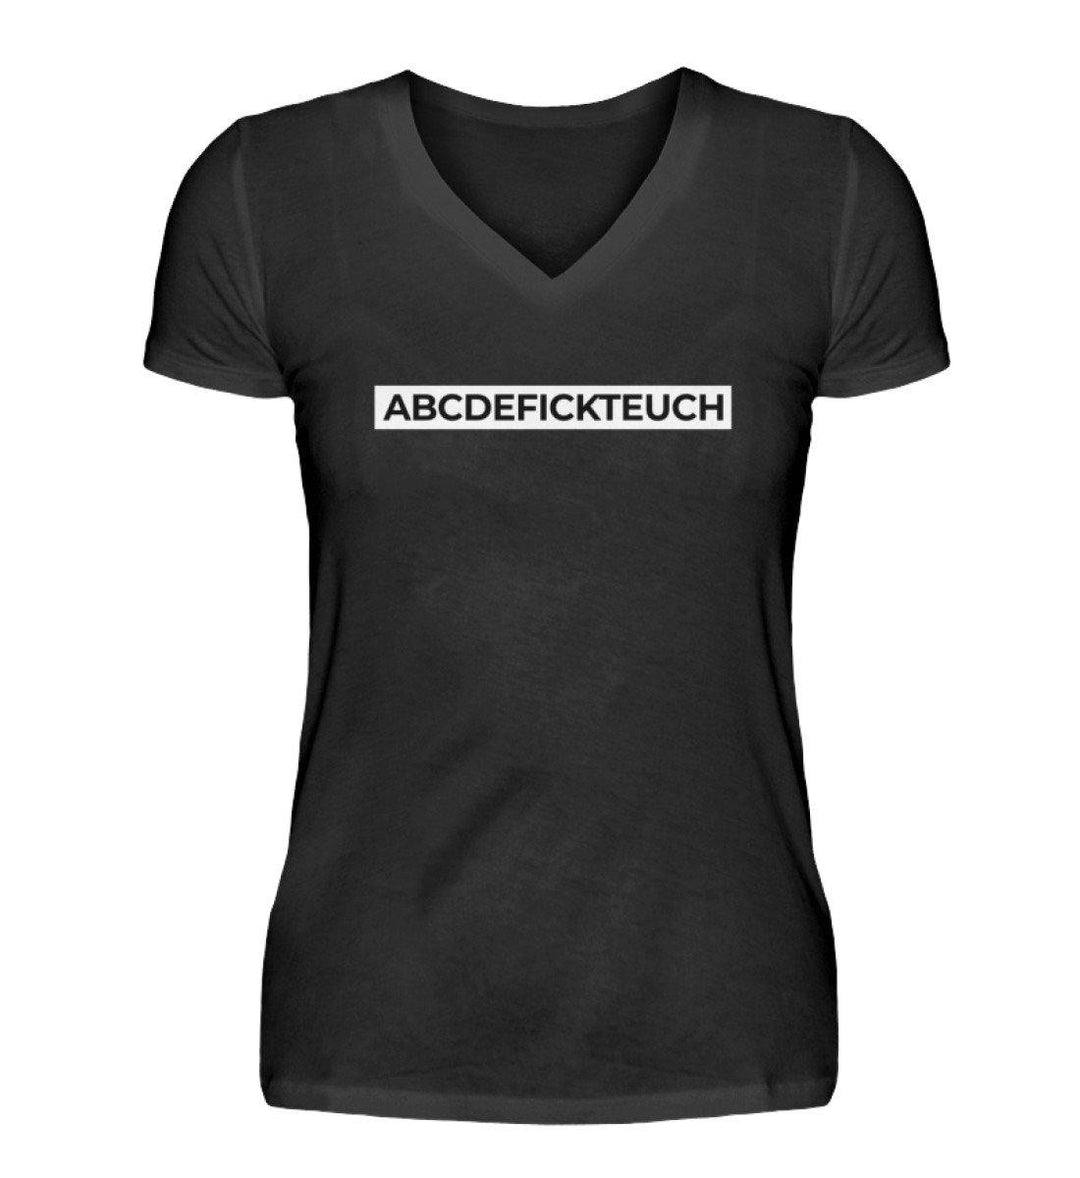 ABCDEFICKTEUCH - Words on Shirts  - V-Neck Damenshirt - Words on Shirts Sag es mit dem Mittelfinger Shirts Hoodies Sweatshirt Taschen Gymsack Spruch Sprüche Statement